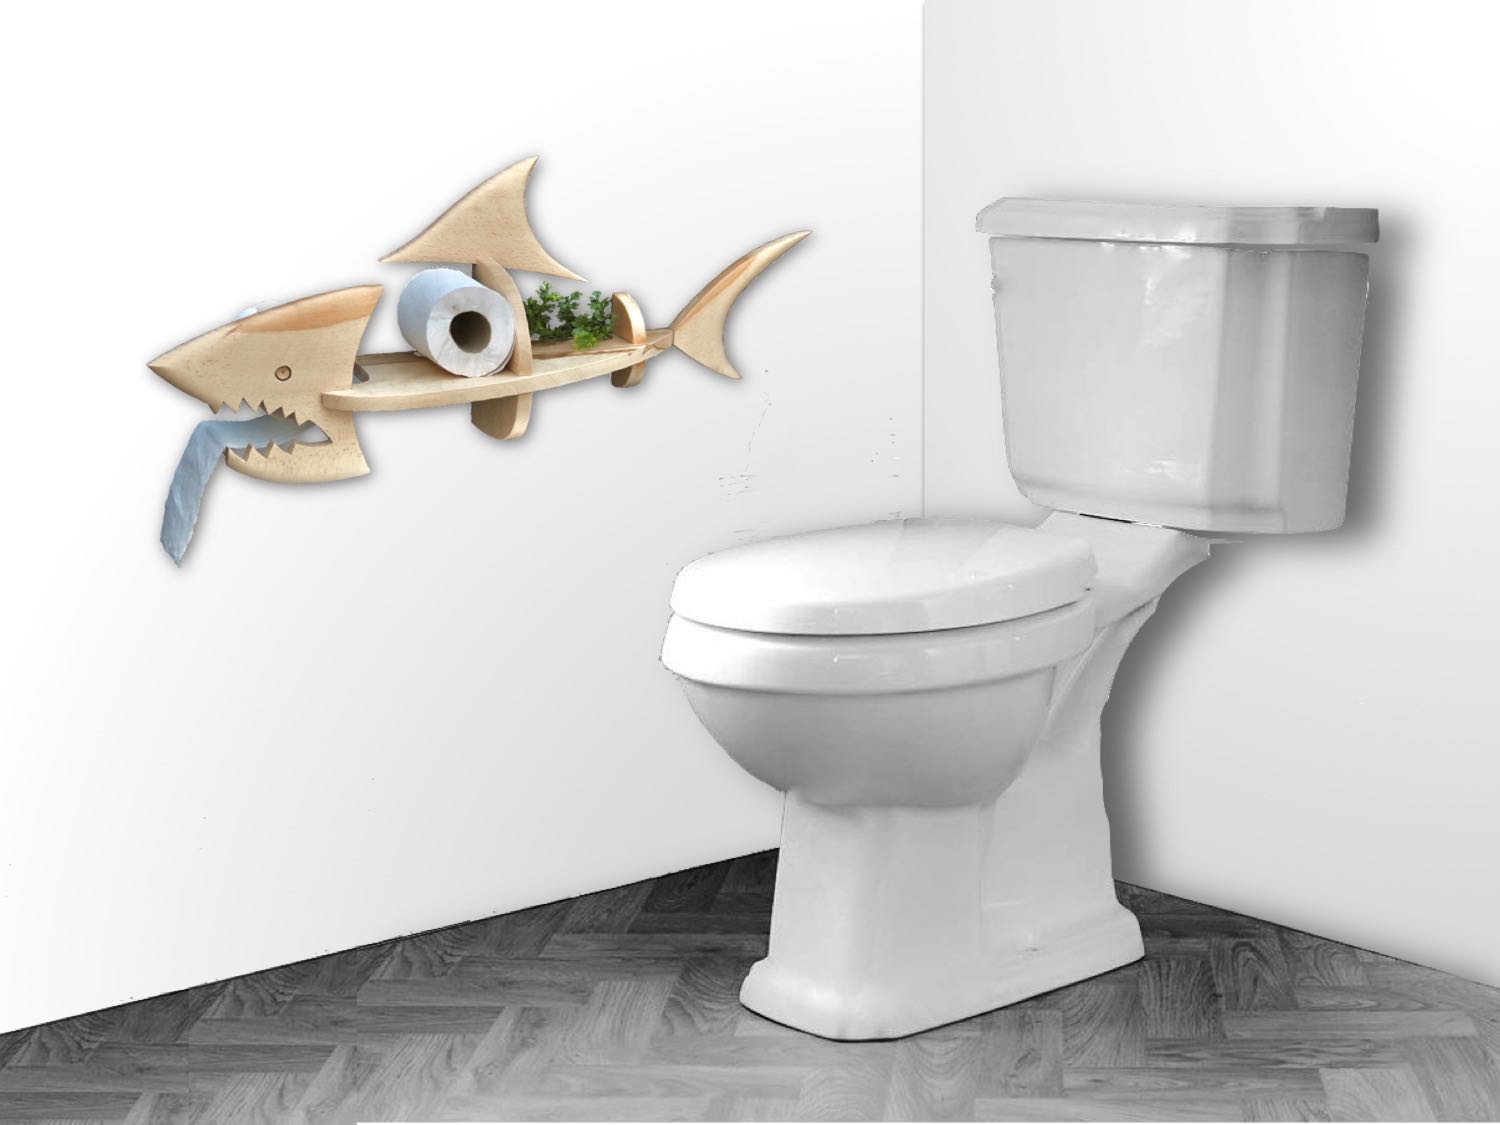 Dérouleur à papier toilette Requin - Simon Bouvet